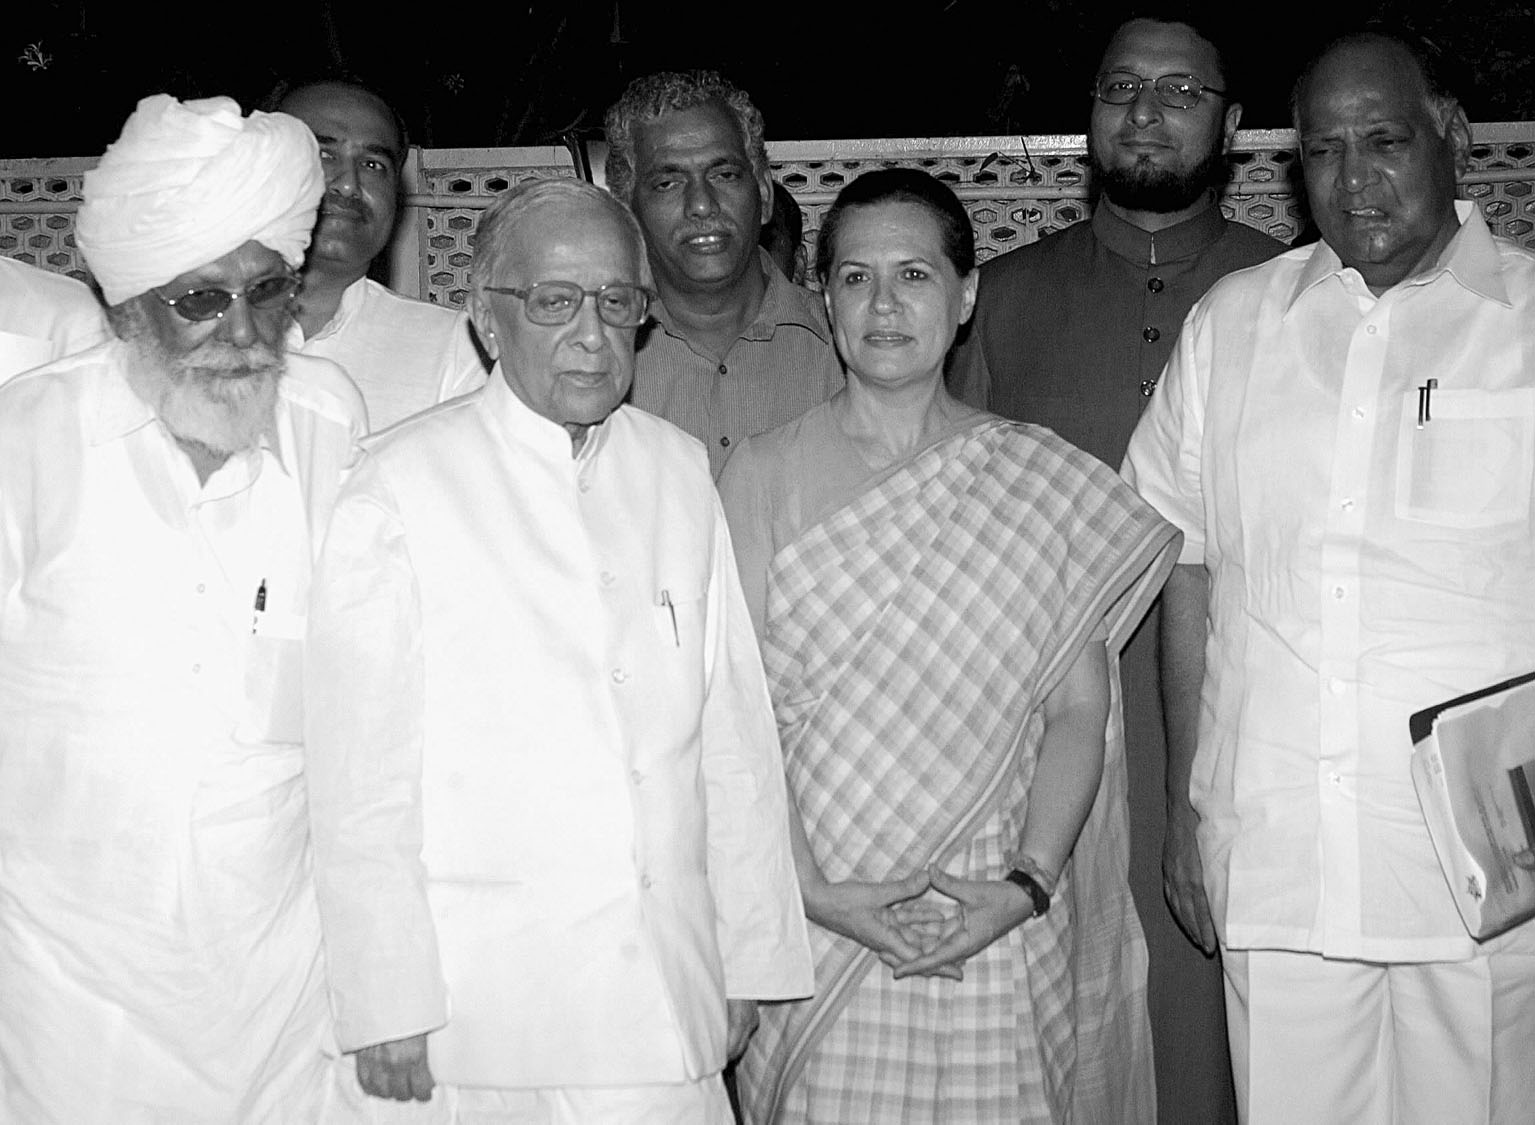 索尼娅·甘地当选印国大党联盟领袖(图)